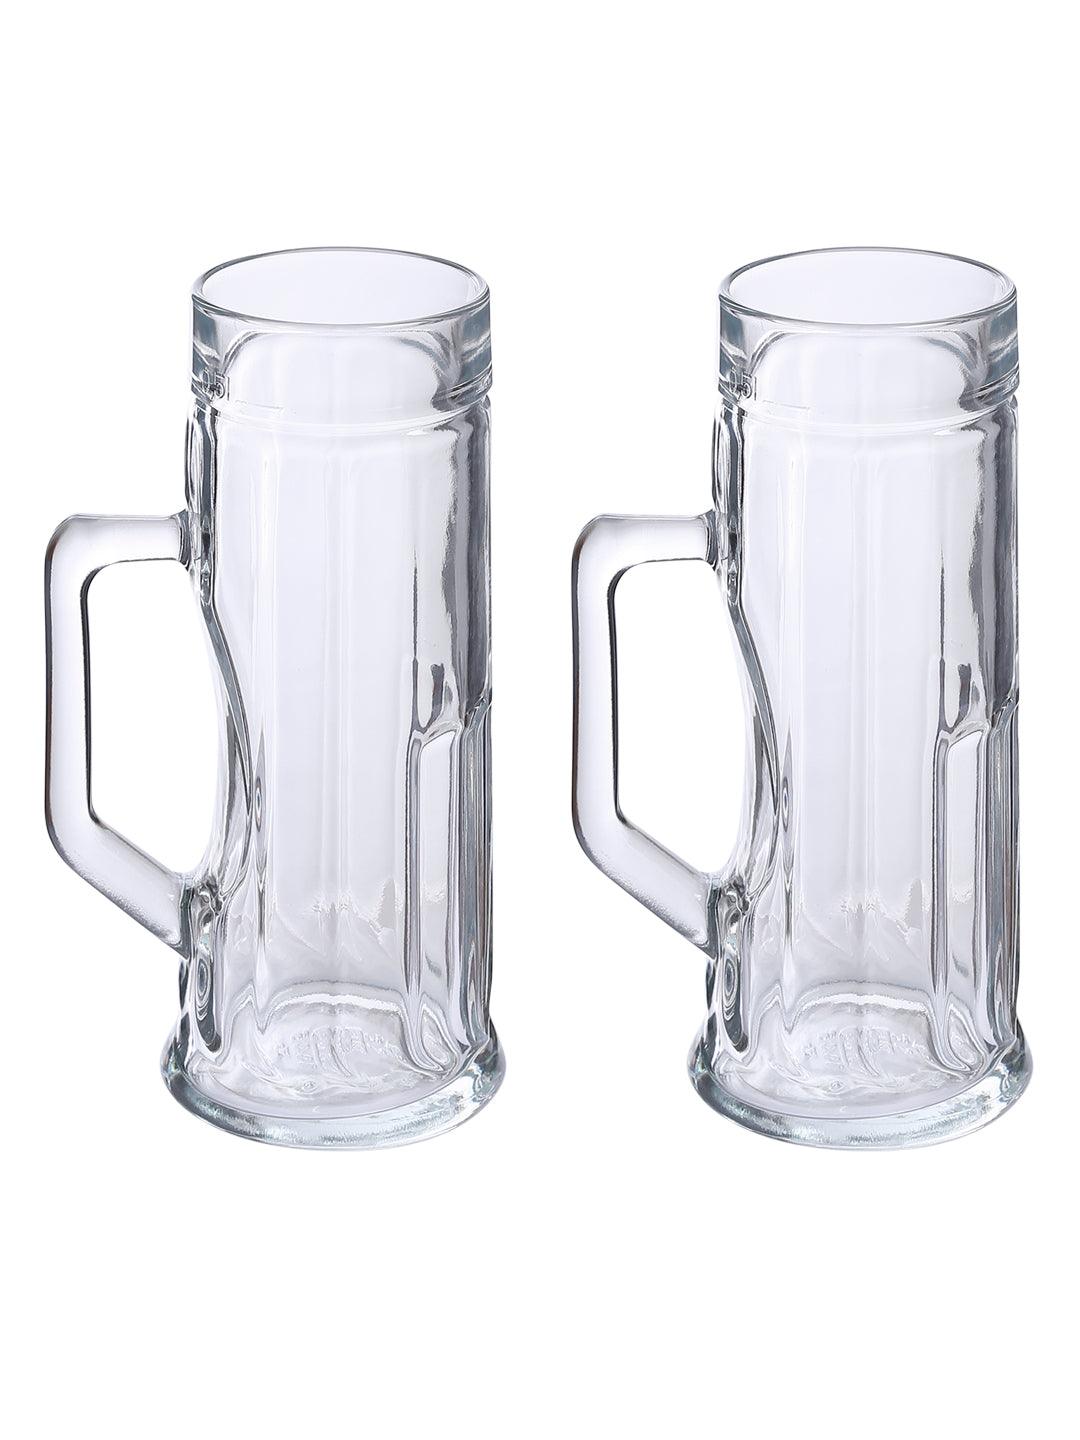 Oberglas Premium Ribbed Beer Mug 550 ML Set of 2pcs | Beer Mug